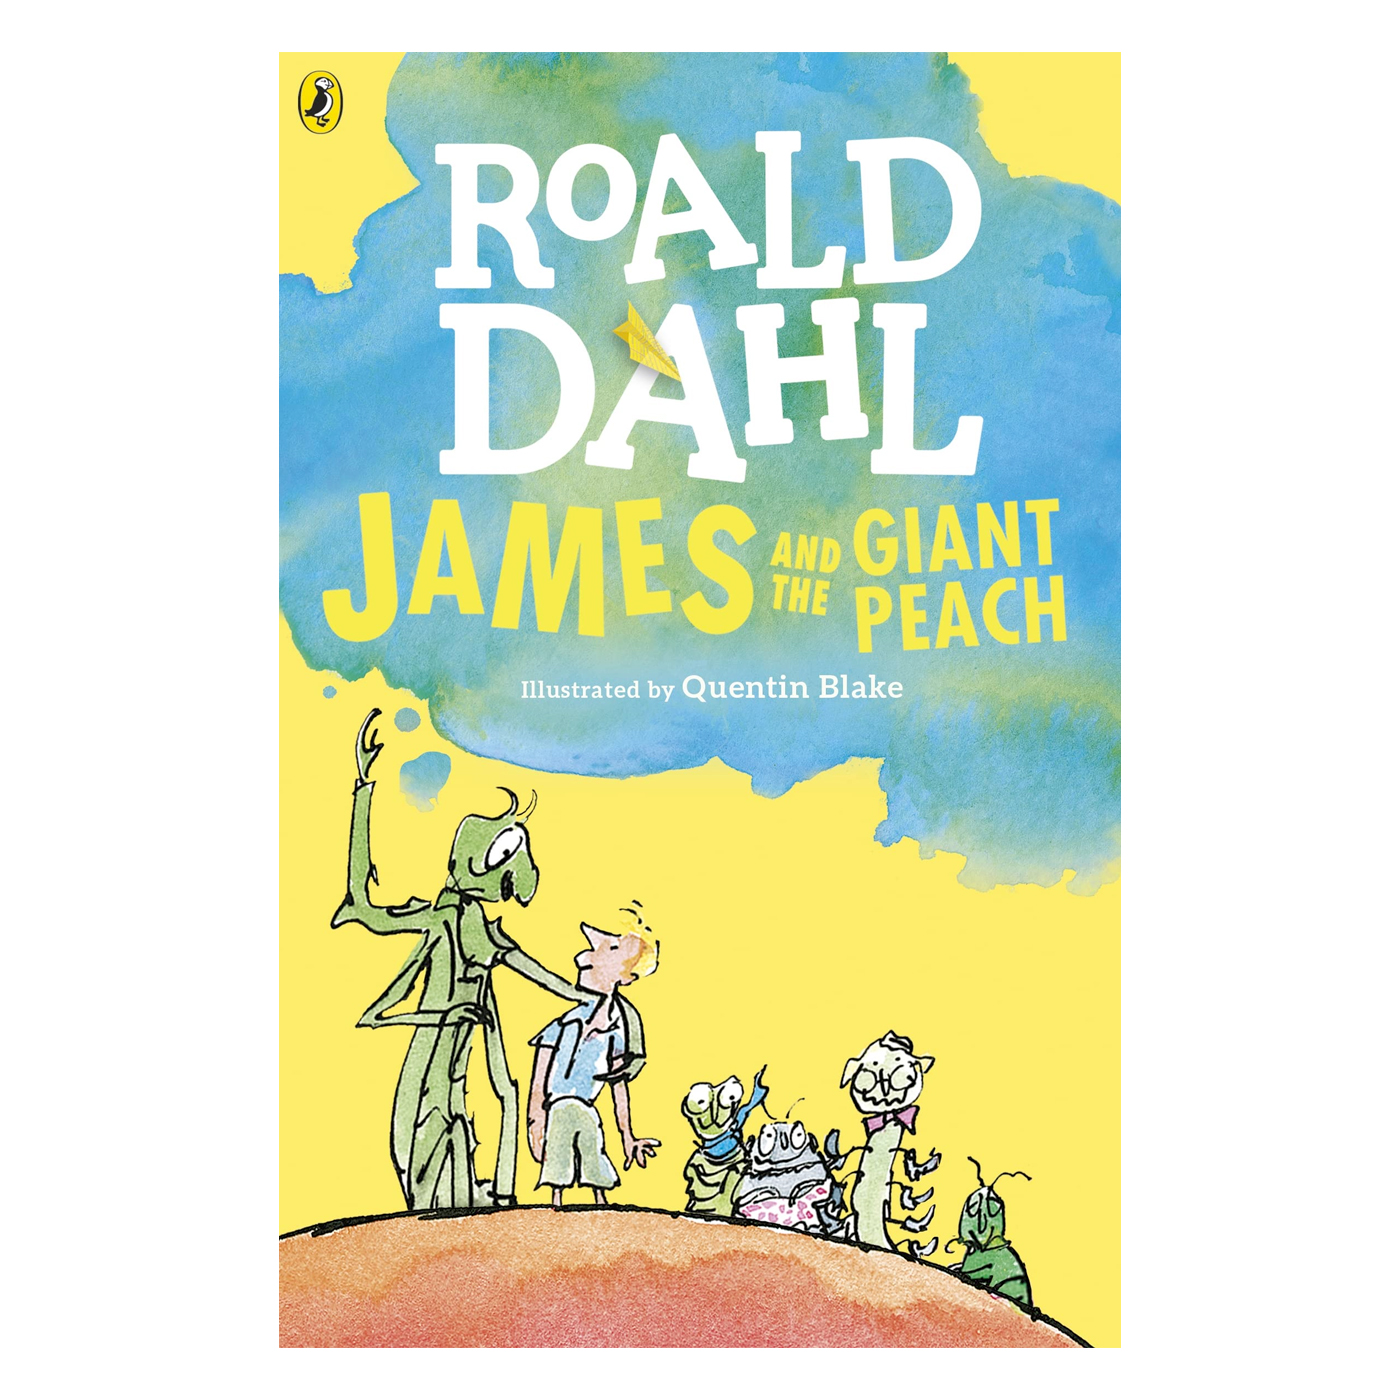  Roald Dahl James and the Giant Peach